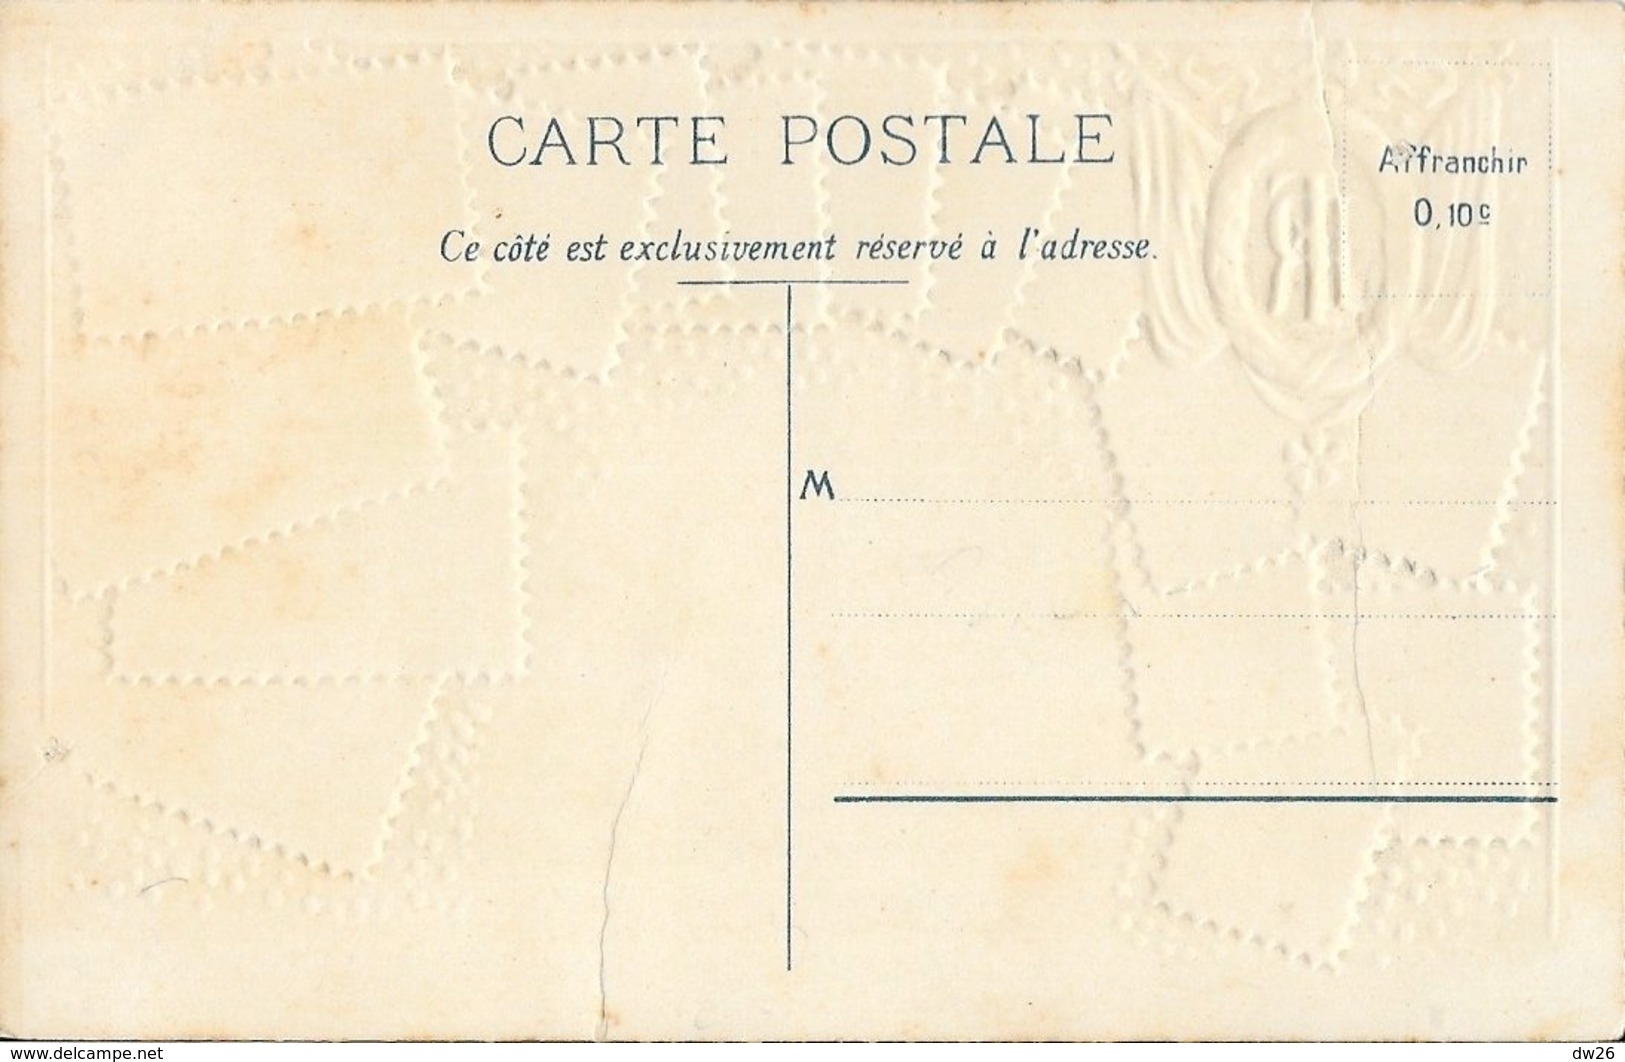 Carte Philatélique D.R.G.M. Non Circulée: Souvenir De France, République Française 1905 - Timbres (représentations)